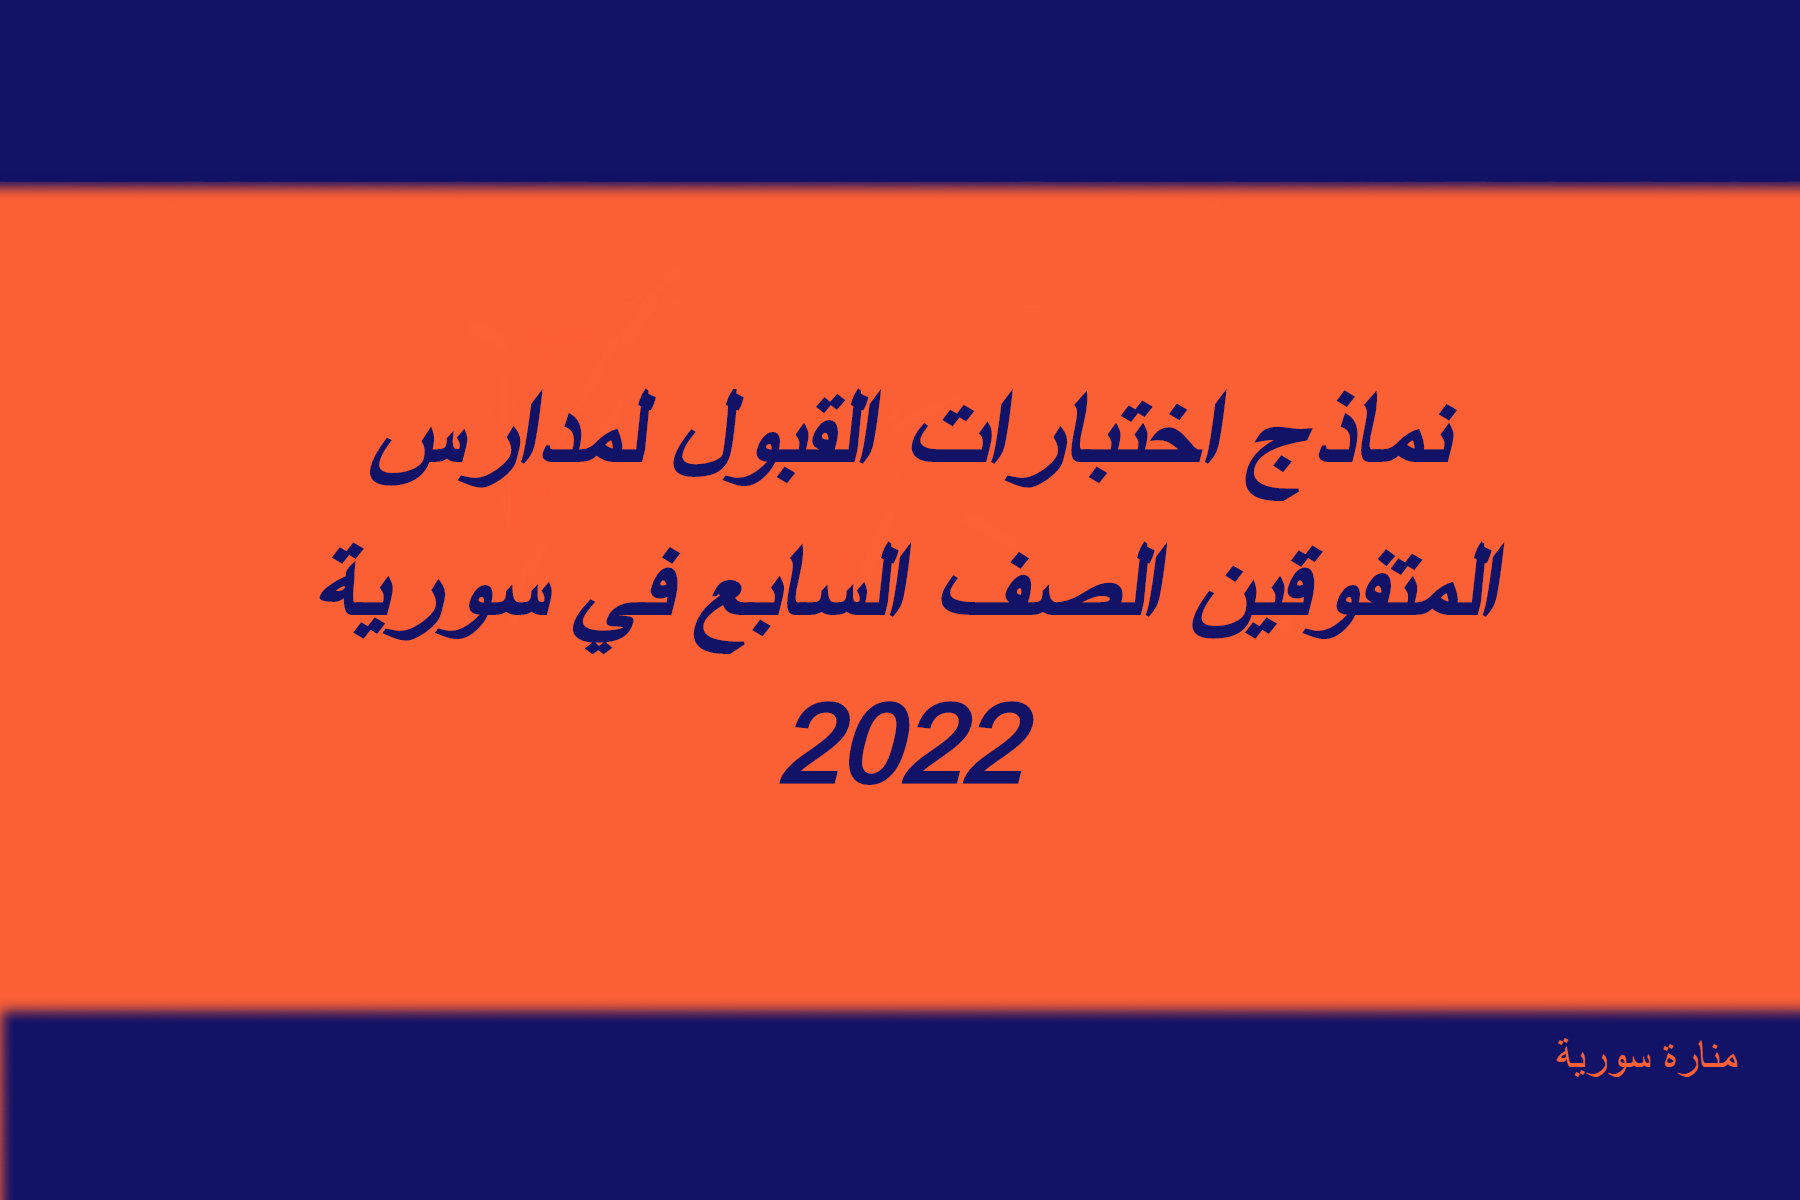 نماذج اختبارات القبول لمدارس المتفوقين الصف السابع في سورية 2022